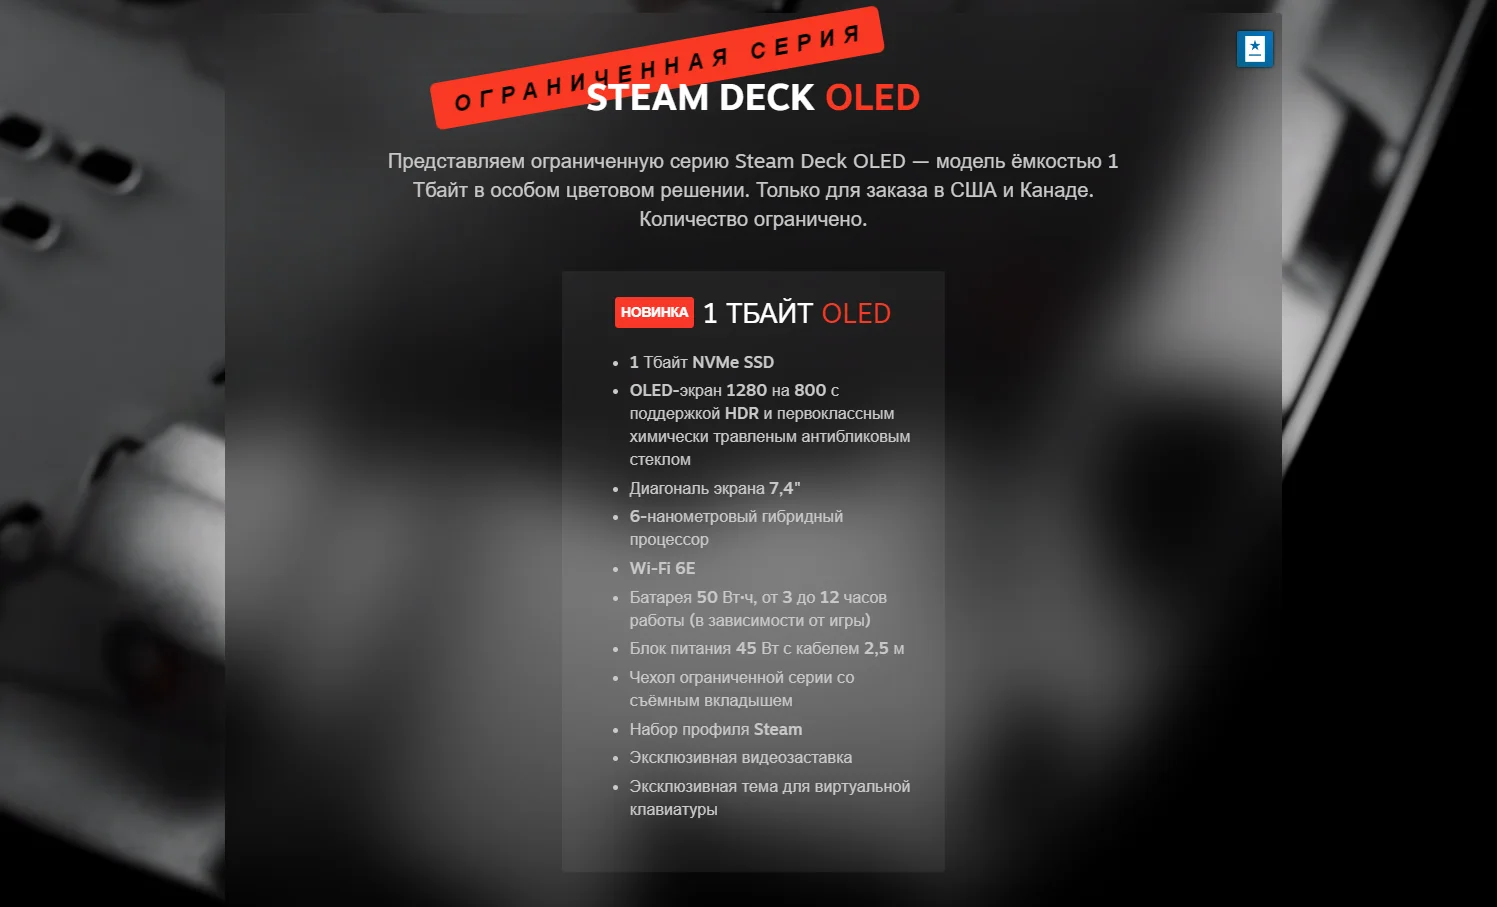 Анонс об ограниченной серии Steam Deck OLED